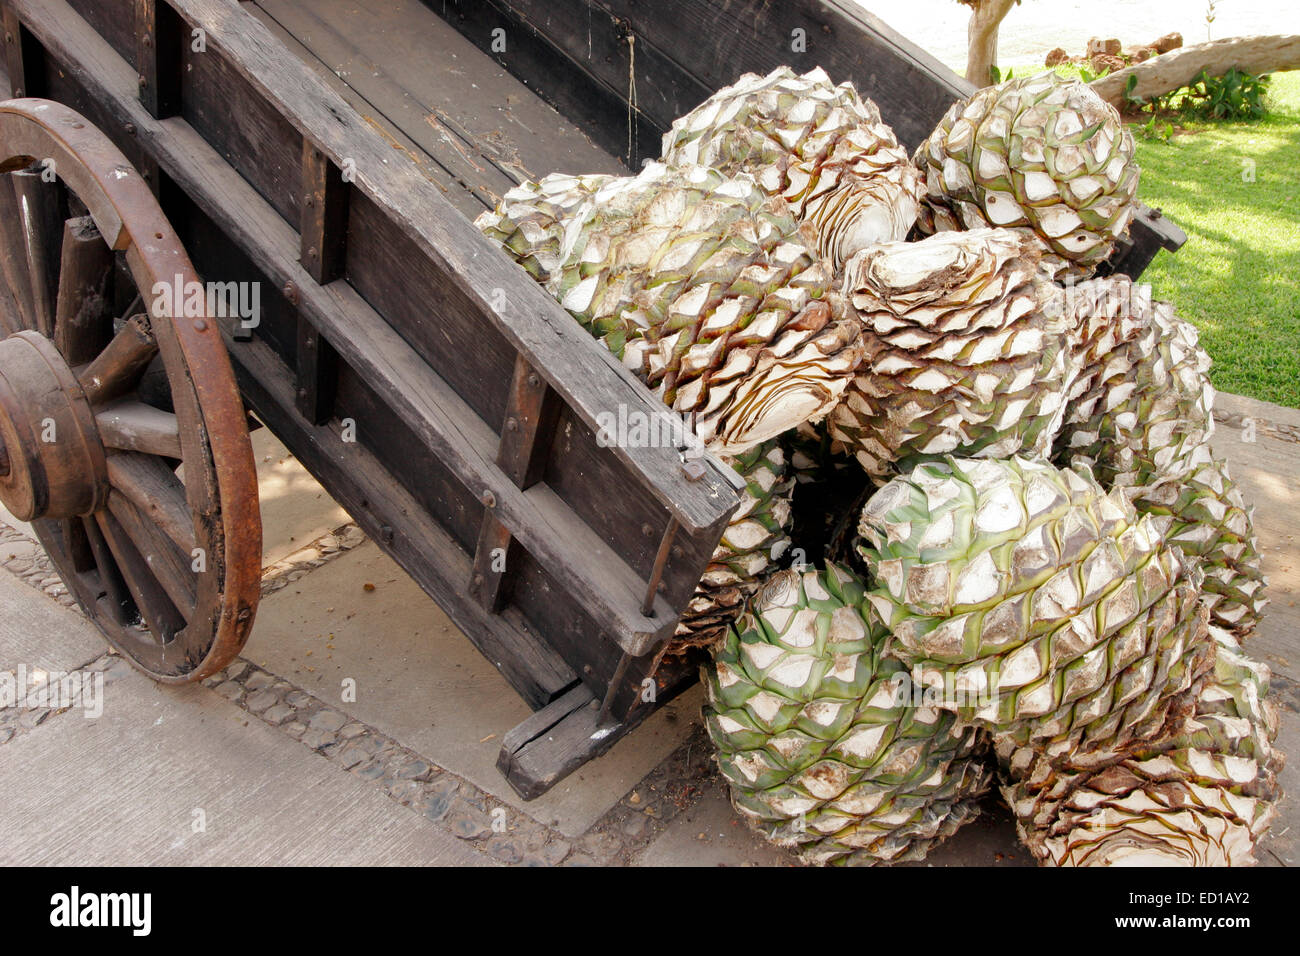 Eine Reife Agave Pina wiegt von 20-40kg (50-100 lbs) und jeder ergibt durchschnittlich 5-7 Liter Tequila. Jalisco, Mexiko Stockfoto